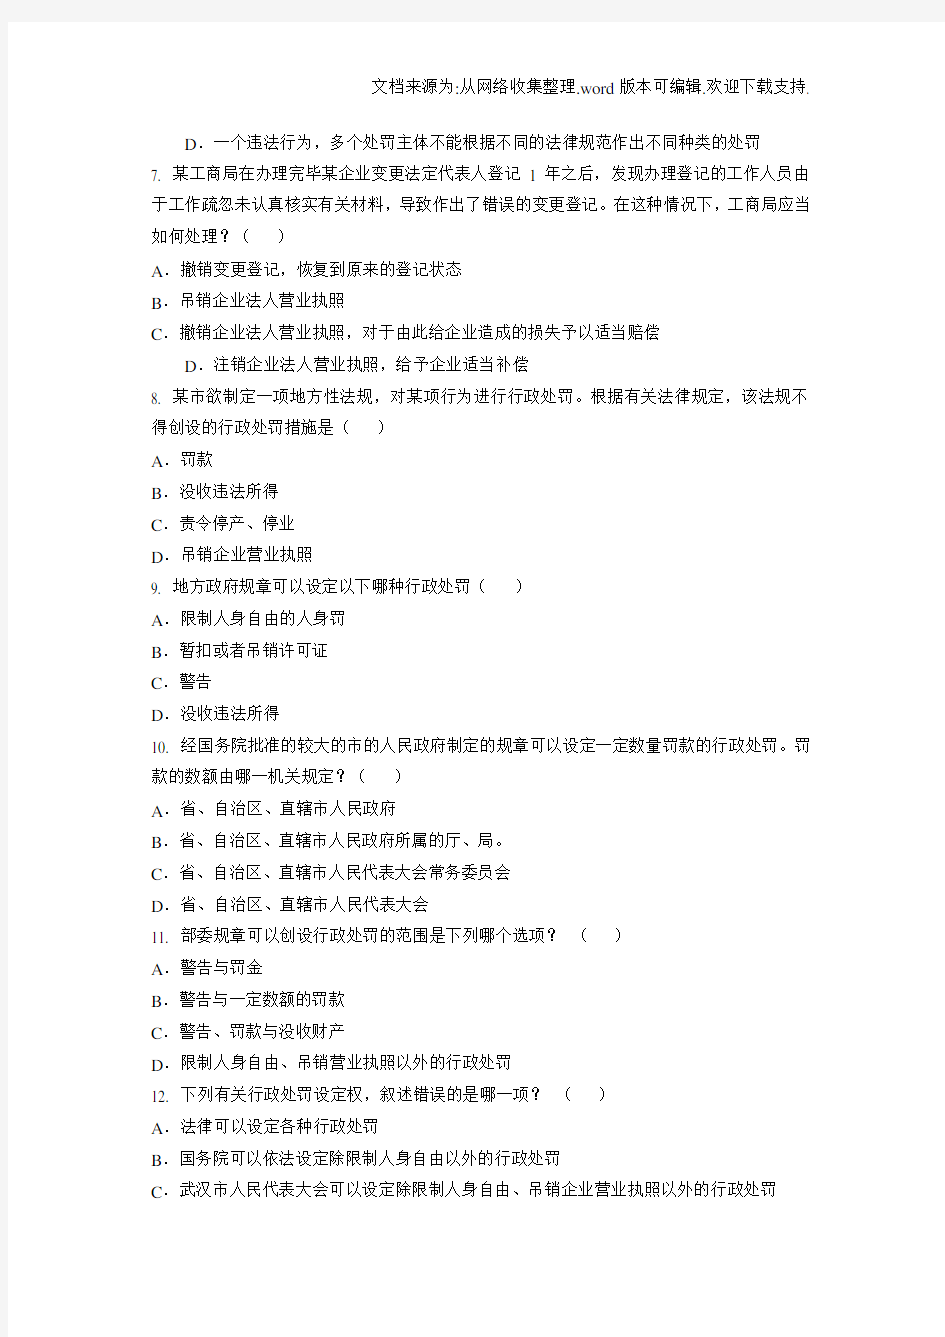 中华人民共和国行政处罚法试题共150题及答案(供参考)